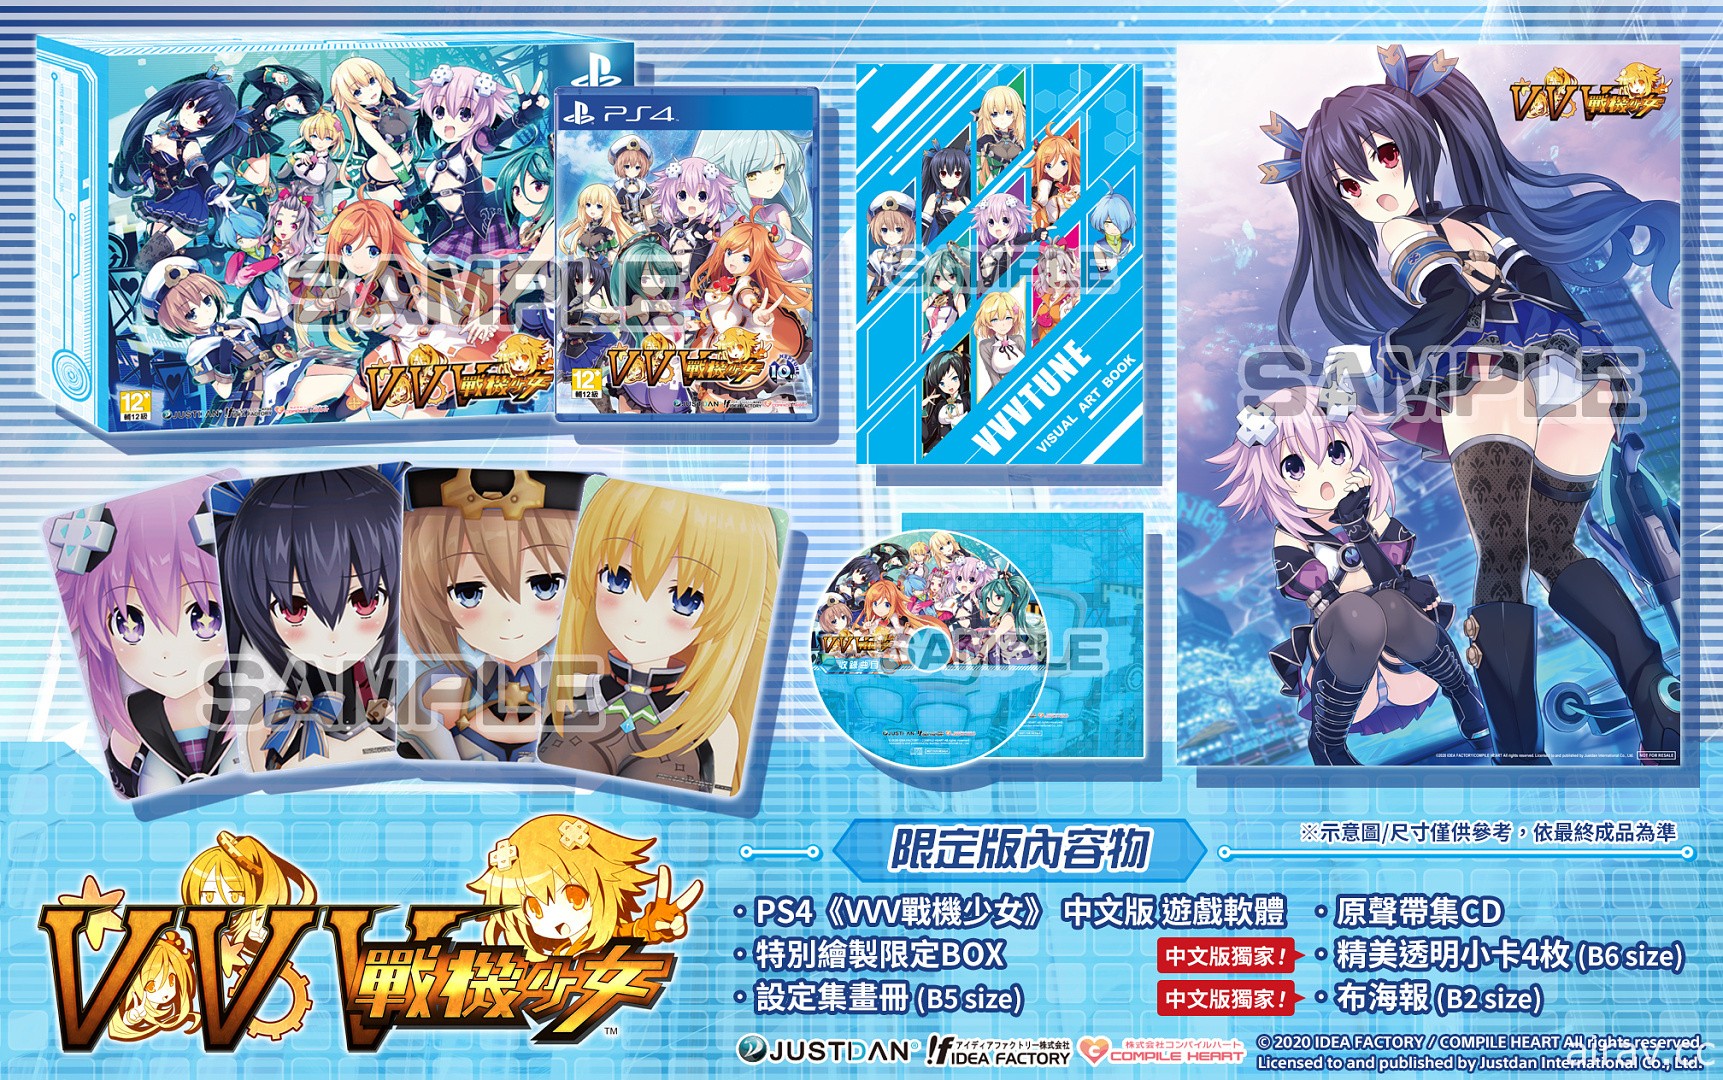 《VVV 戰機少女》中文版預約特典、限定版內容物及免費 DLC 服裝完整公開